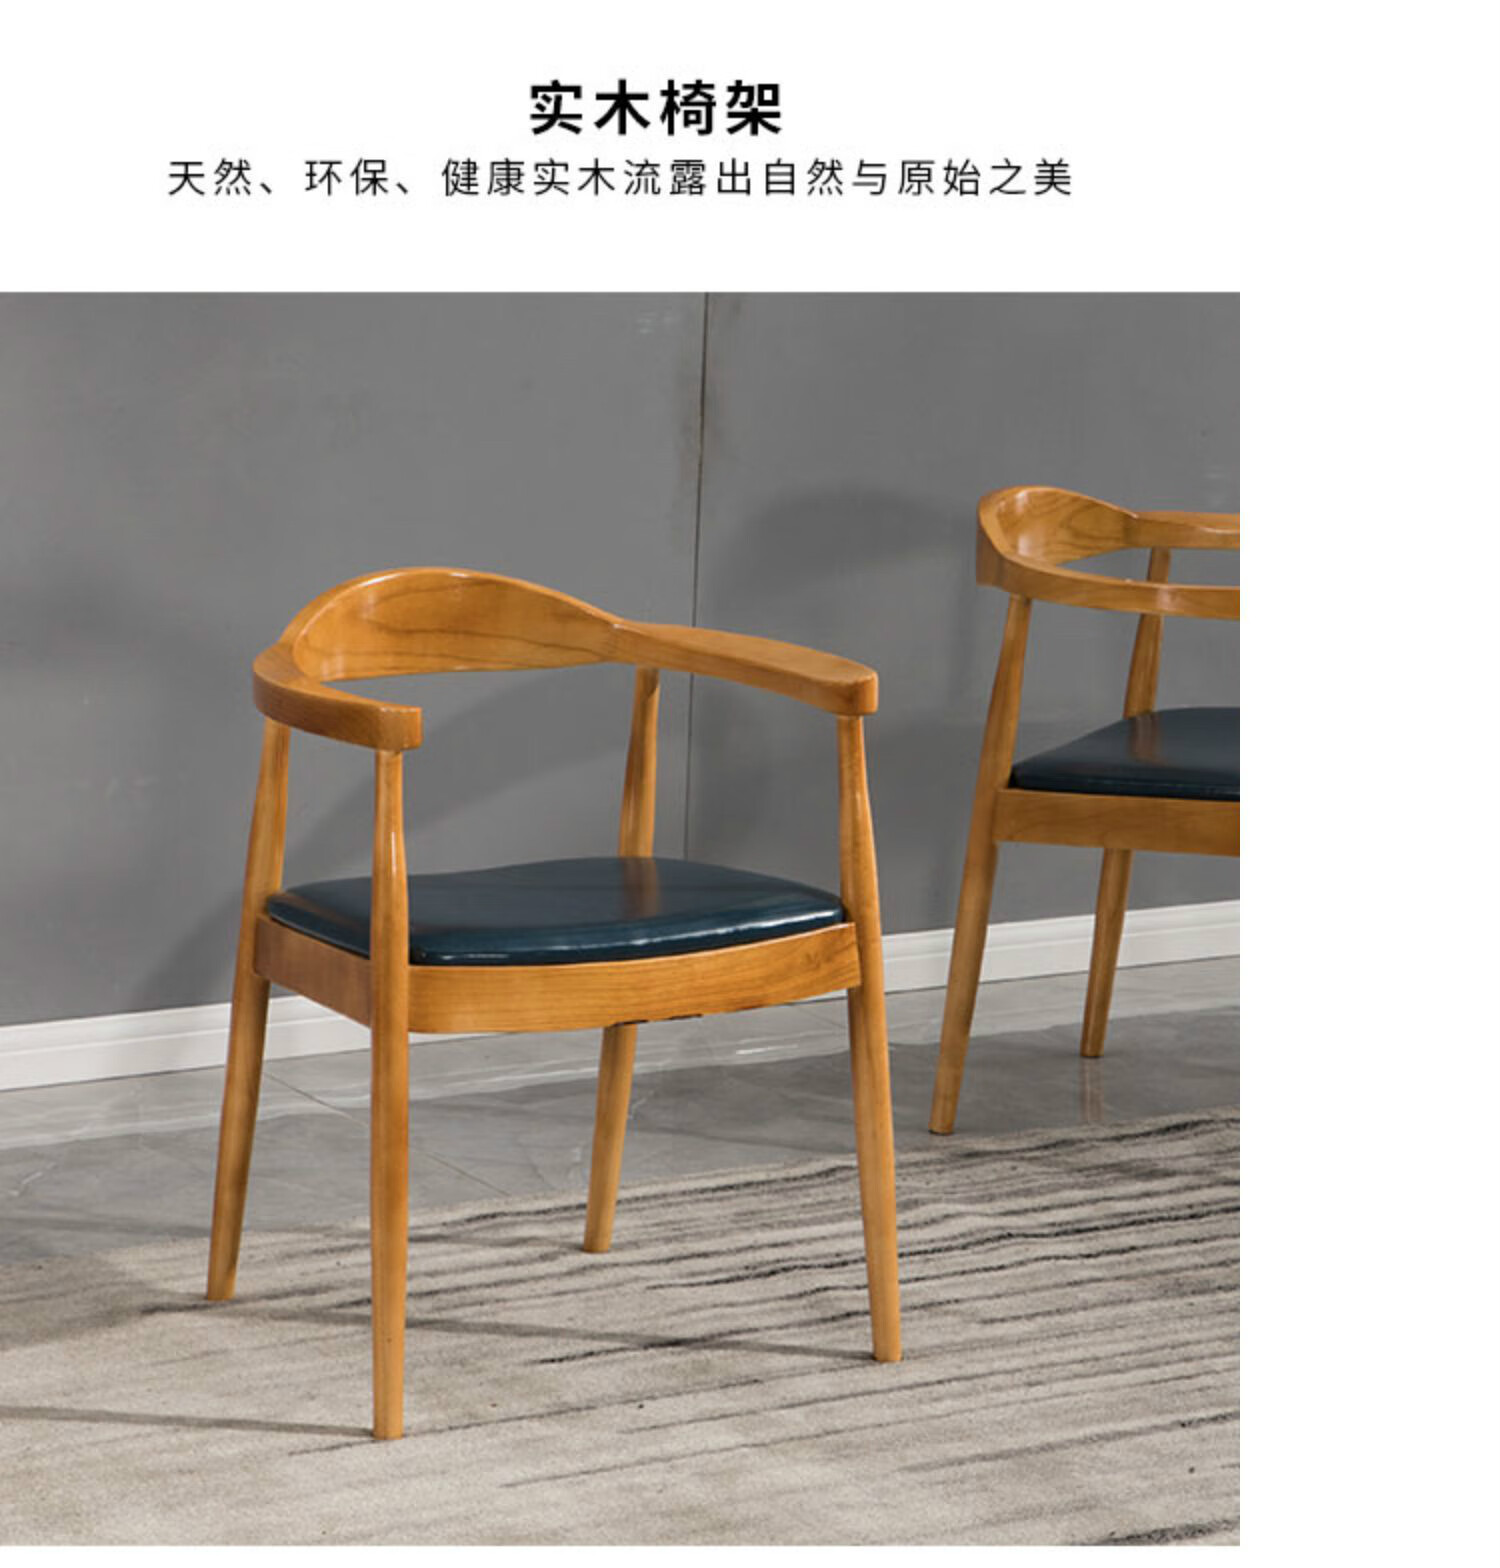 总统椅新中式简约实木餐椅 家用靠背扶手椅子圈椅休闲椅牛角广岛椅